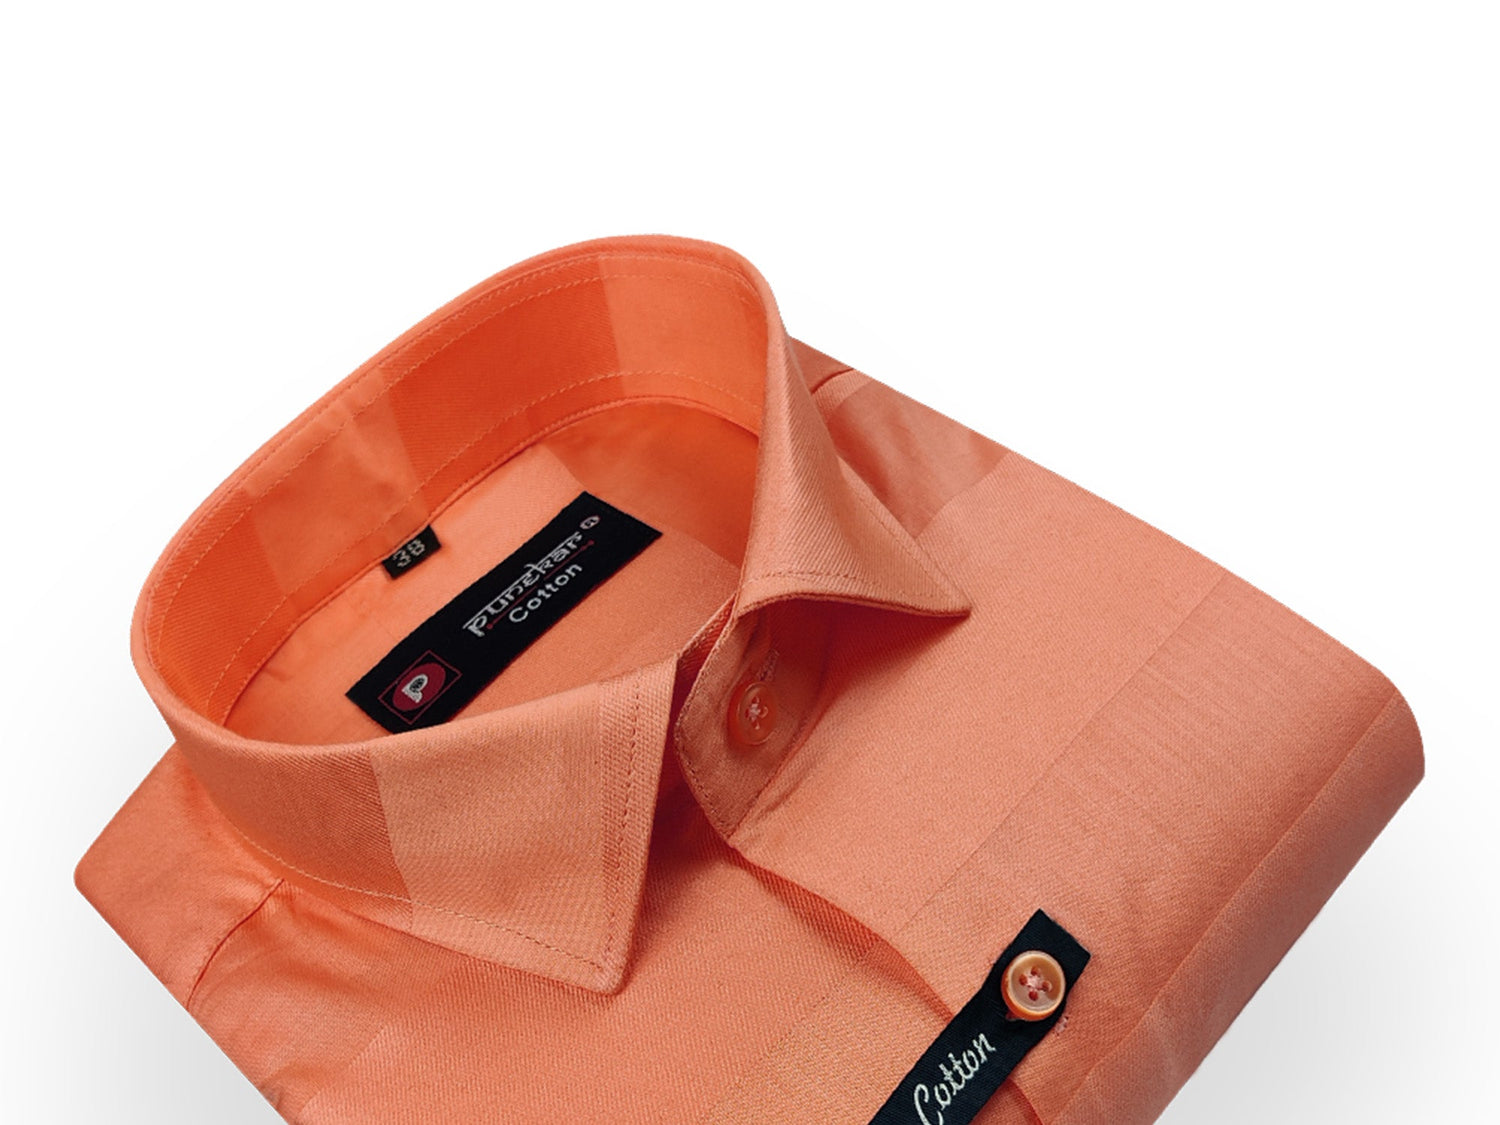 Orange Color Pure Cotton Wide Stripes Shirt For Men - Punekar Cotton